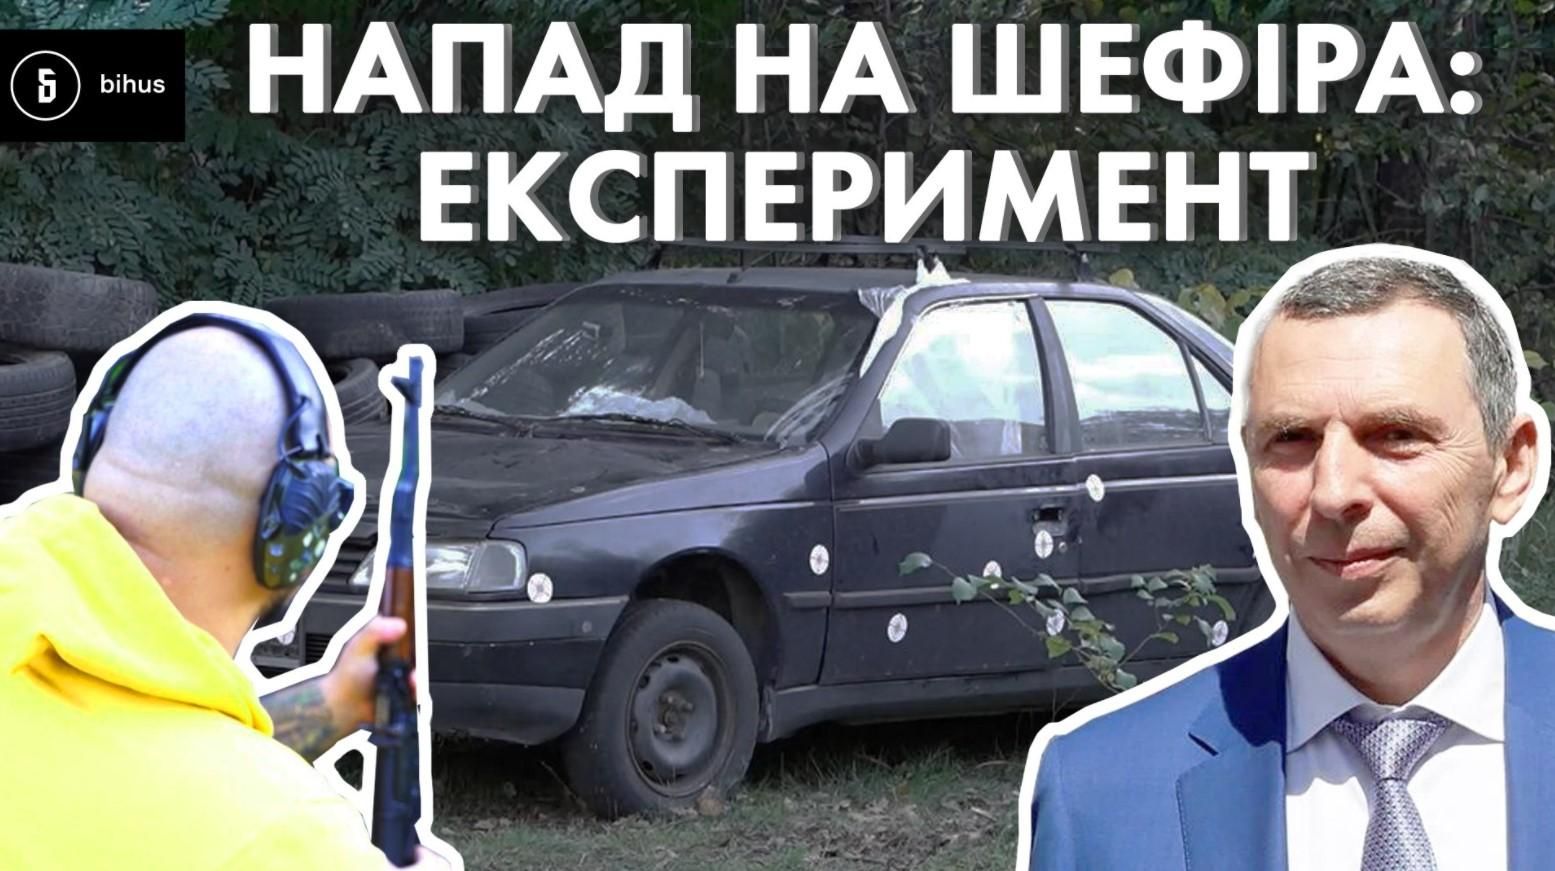 АК проти авто: Бігус повторив постріли зі замаху на Шефіра - Україна новини - 24 Канал